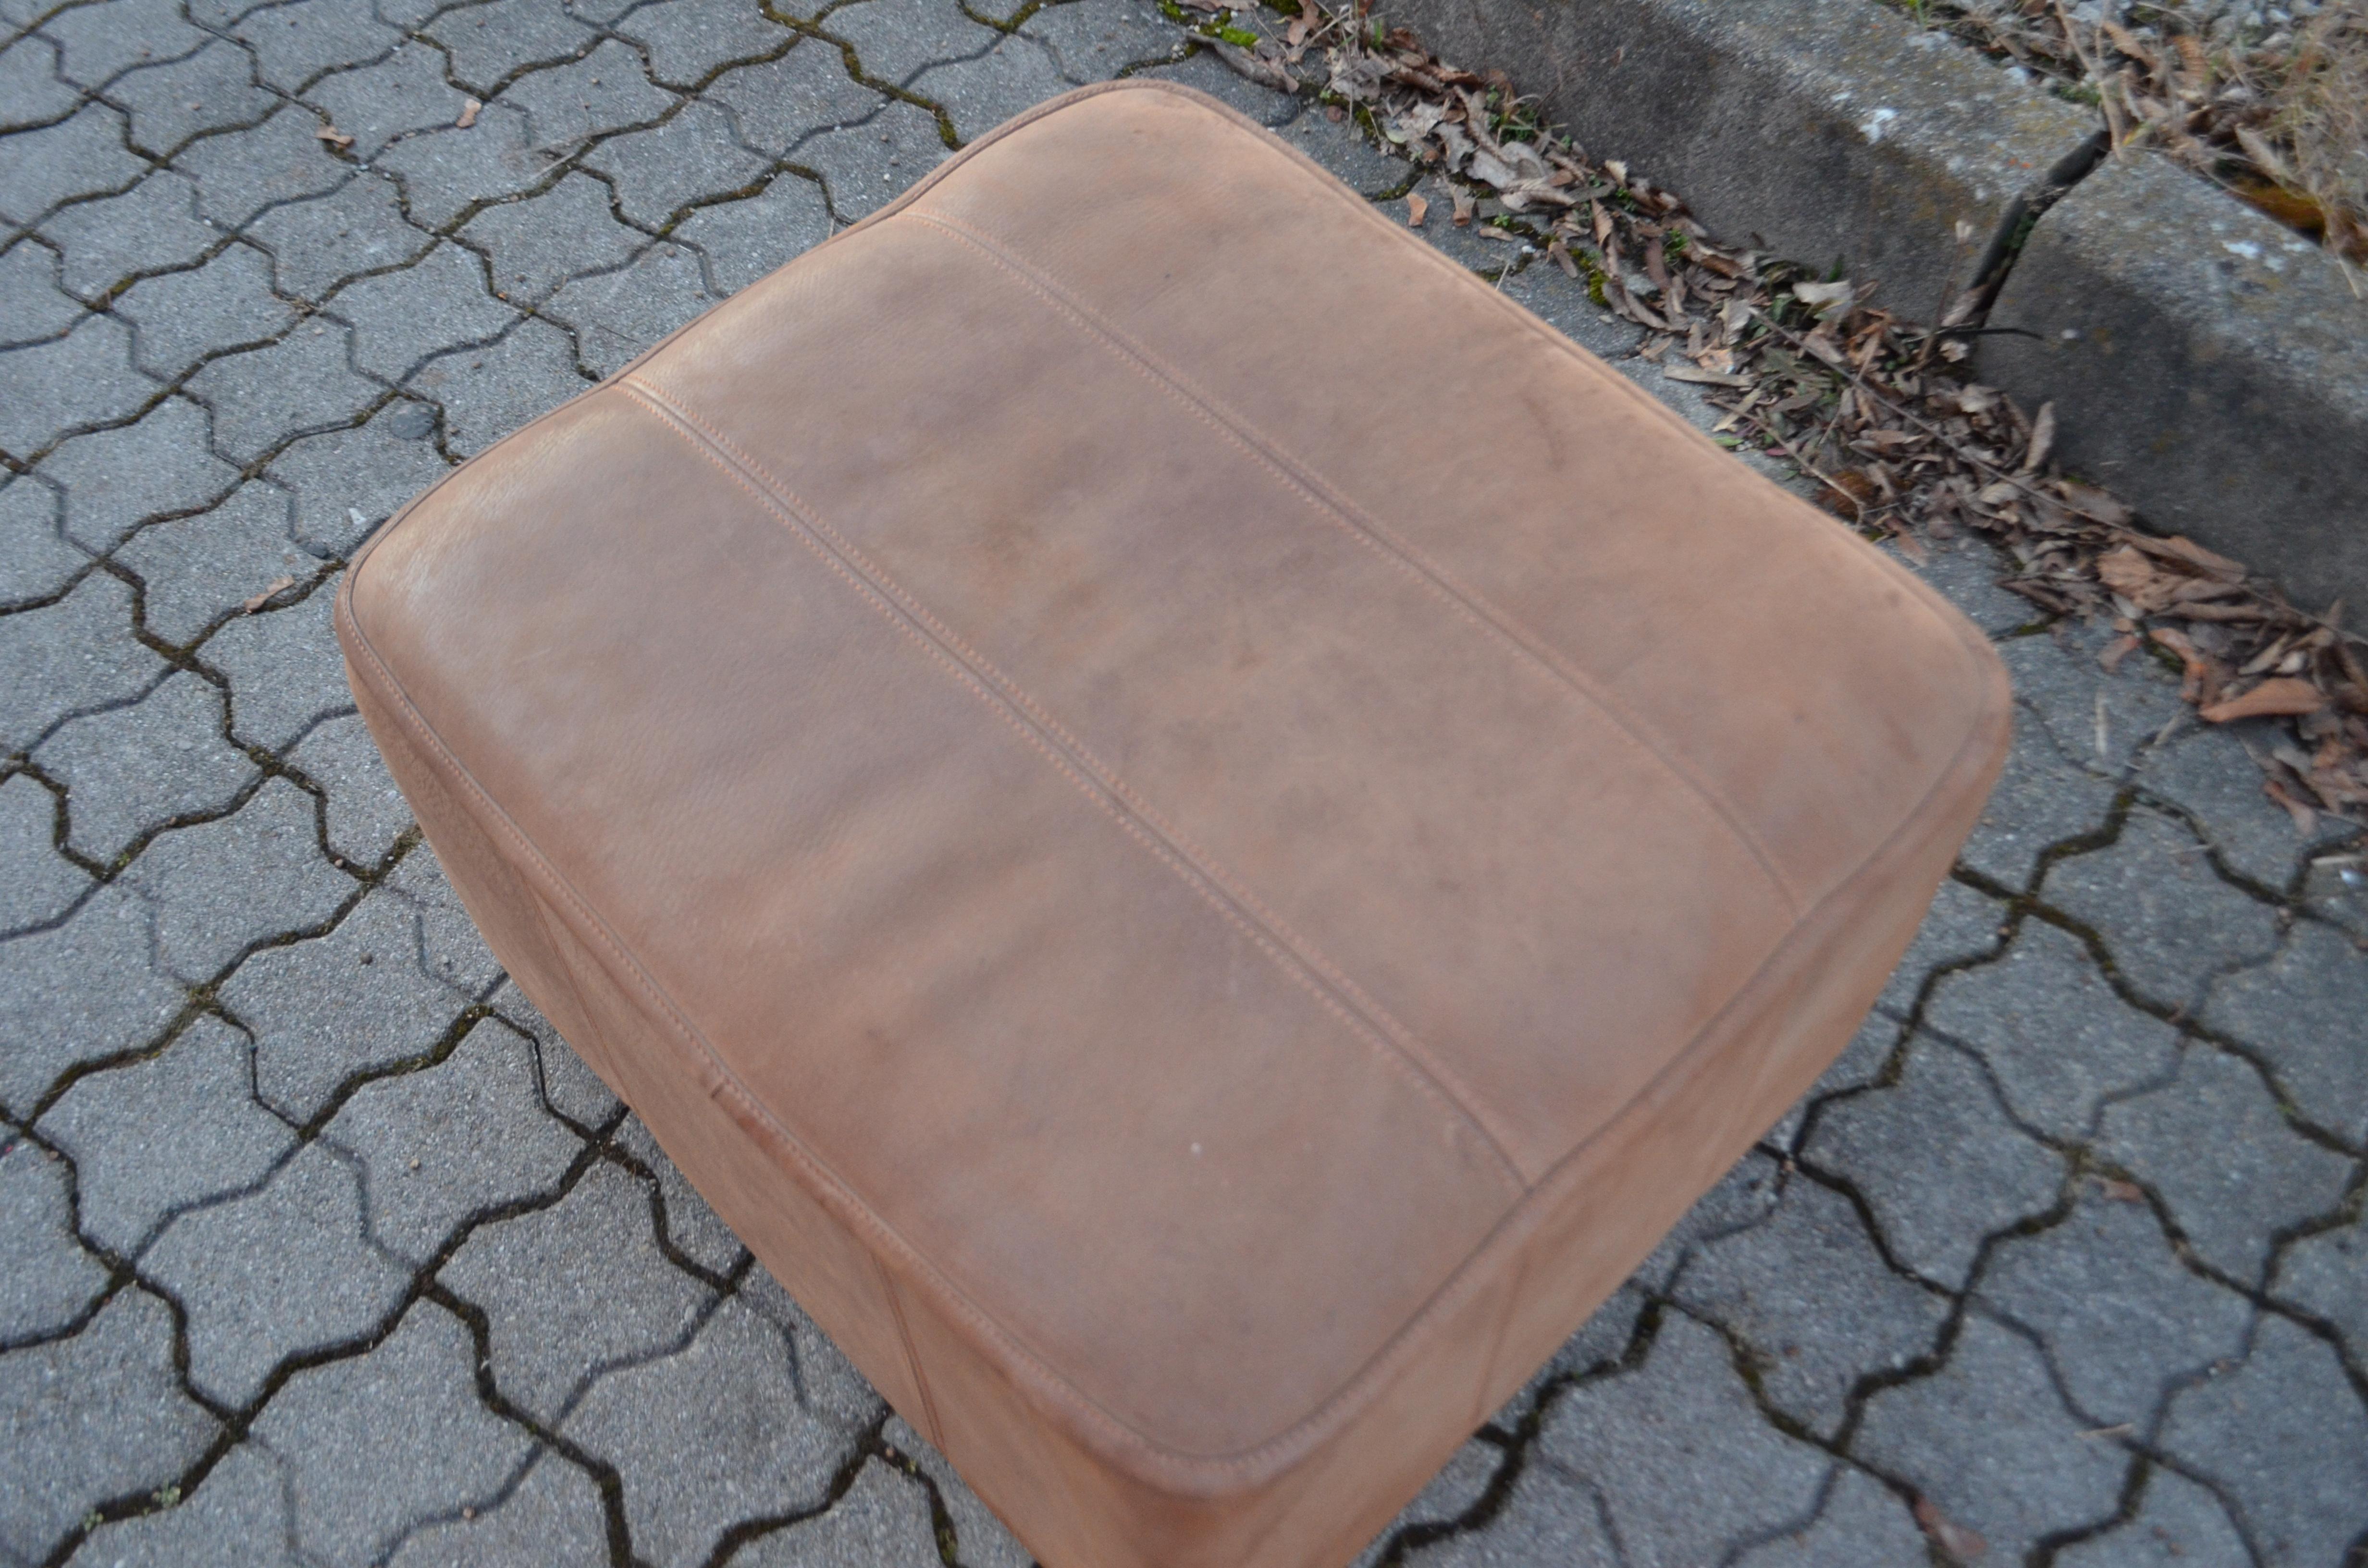 Swiss De Sede DS 47 Neck Leather Ottoman Pouf For Sale